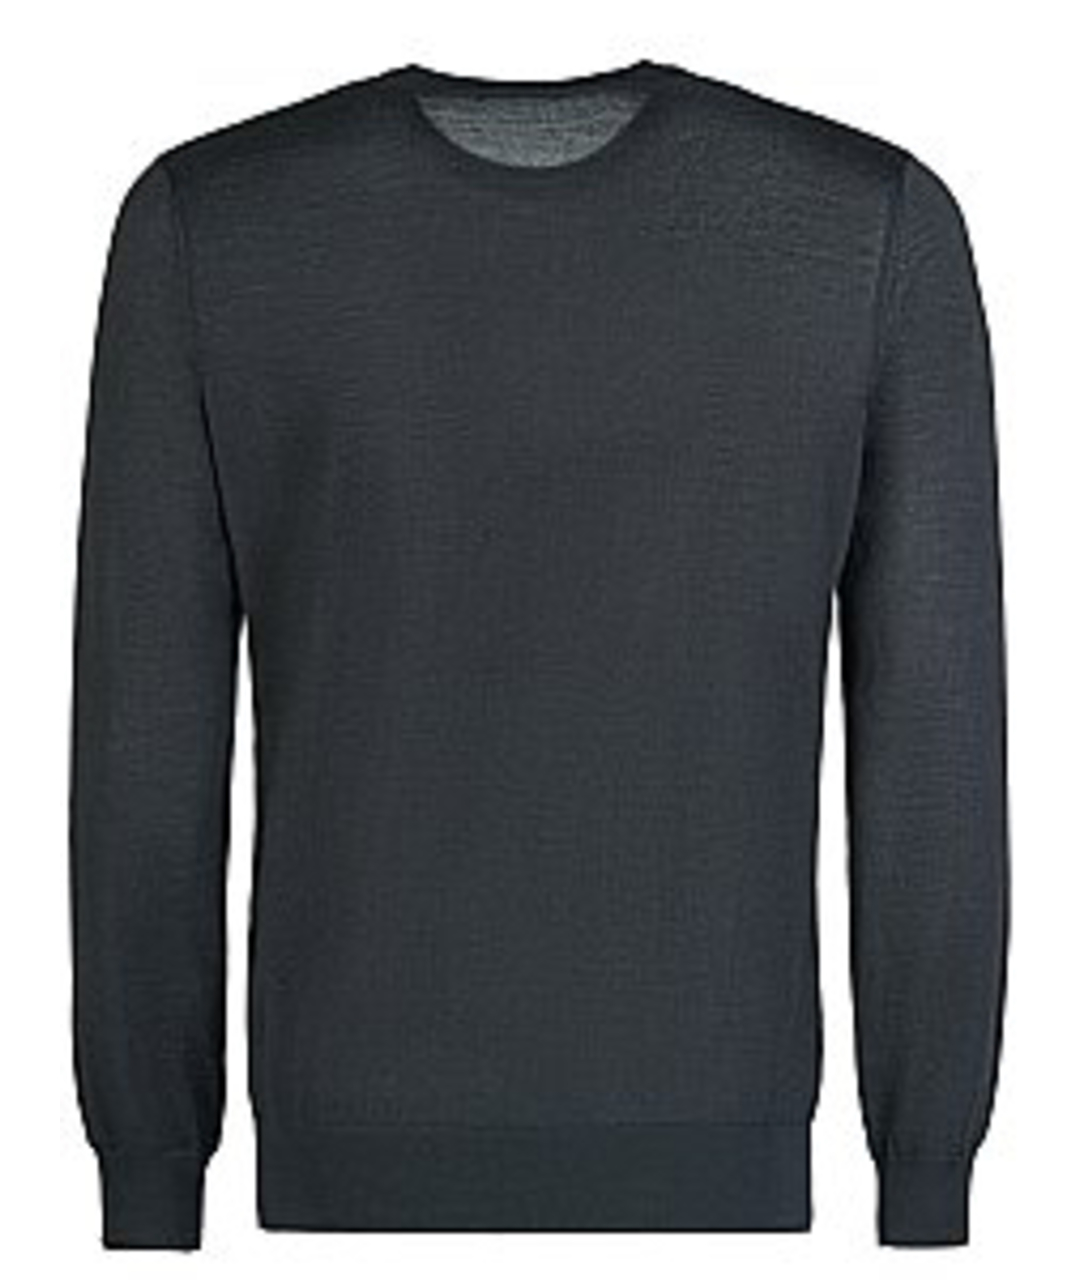 ZILLI Черный кашемировый джемпер / свитер, фото 2